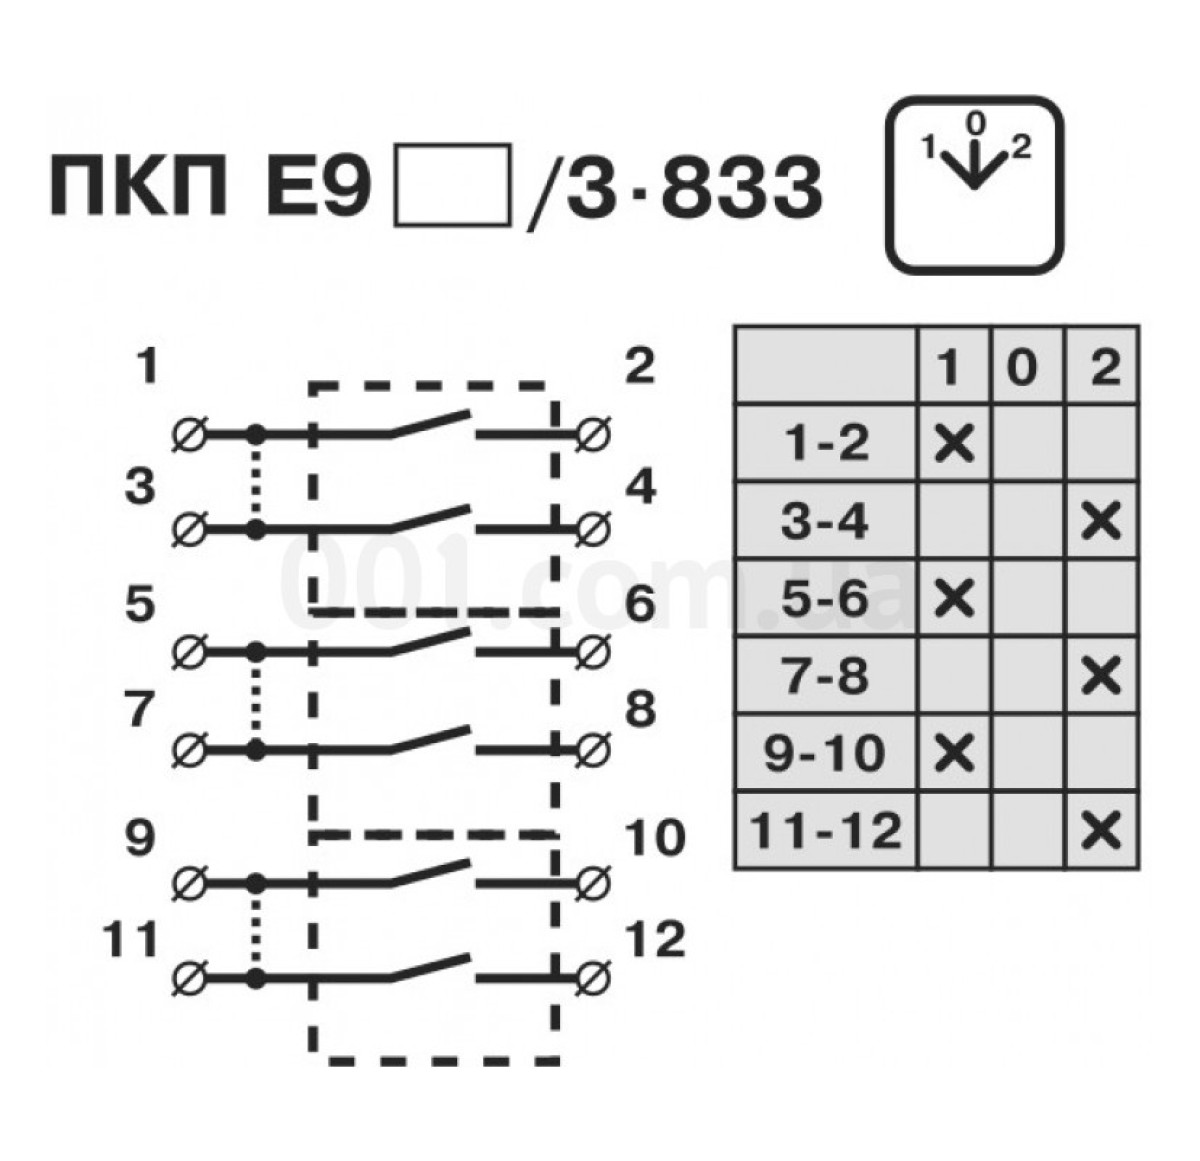 Переключатель кулачковый пакетный ПКП Е9 63А/3.833 (1-0-2) 3P, АСКО-УКРЕМ 98_95.jpg - фото 5